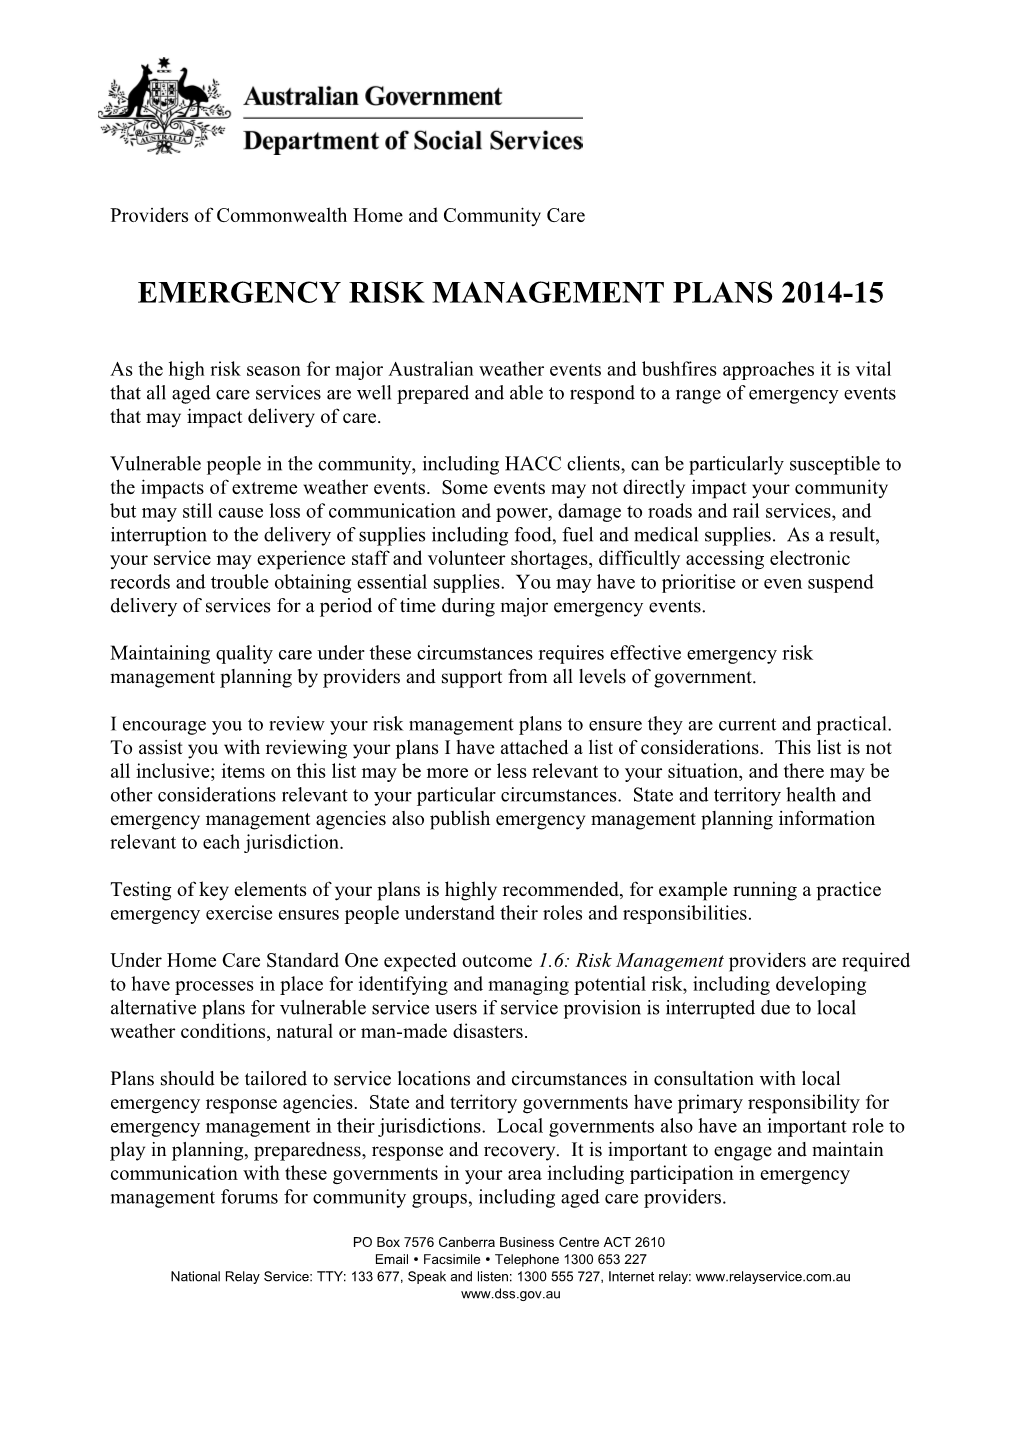 Emergency Risk Management Plans 2014-15